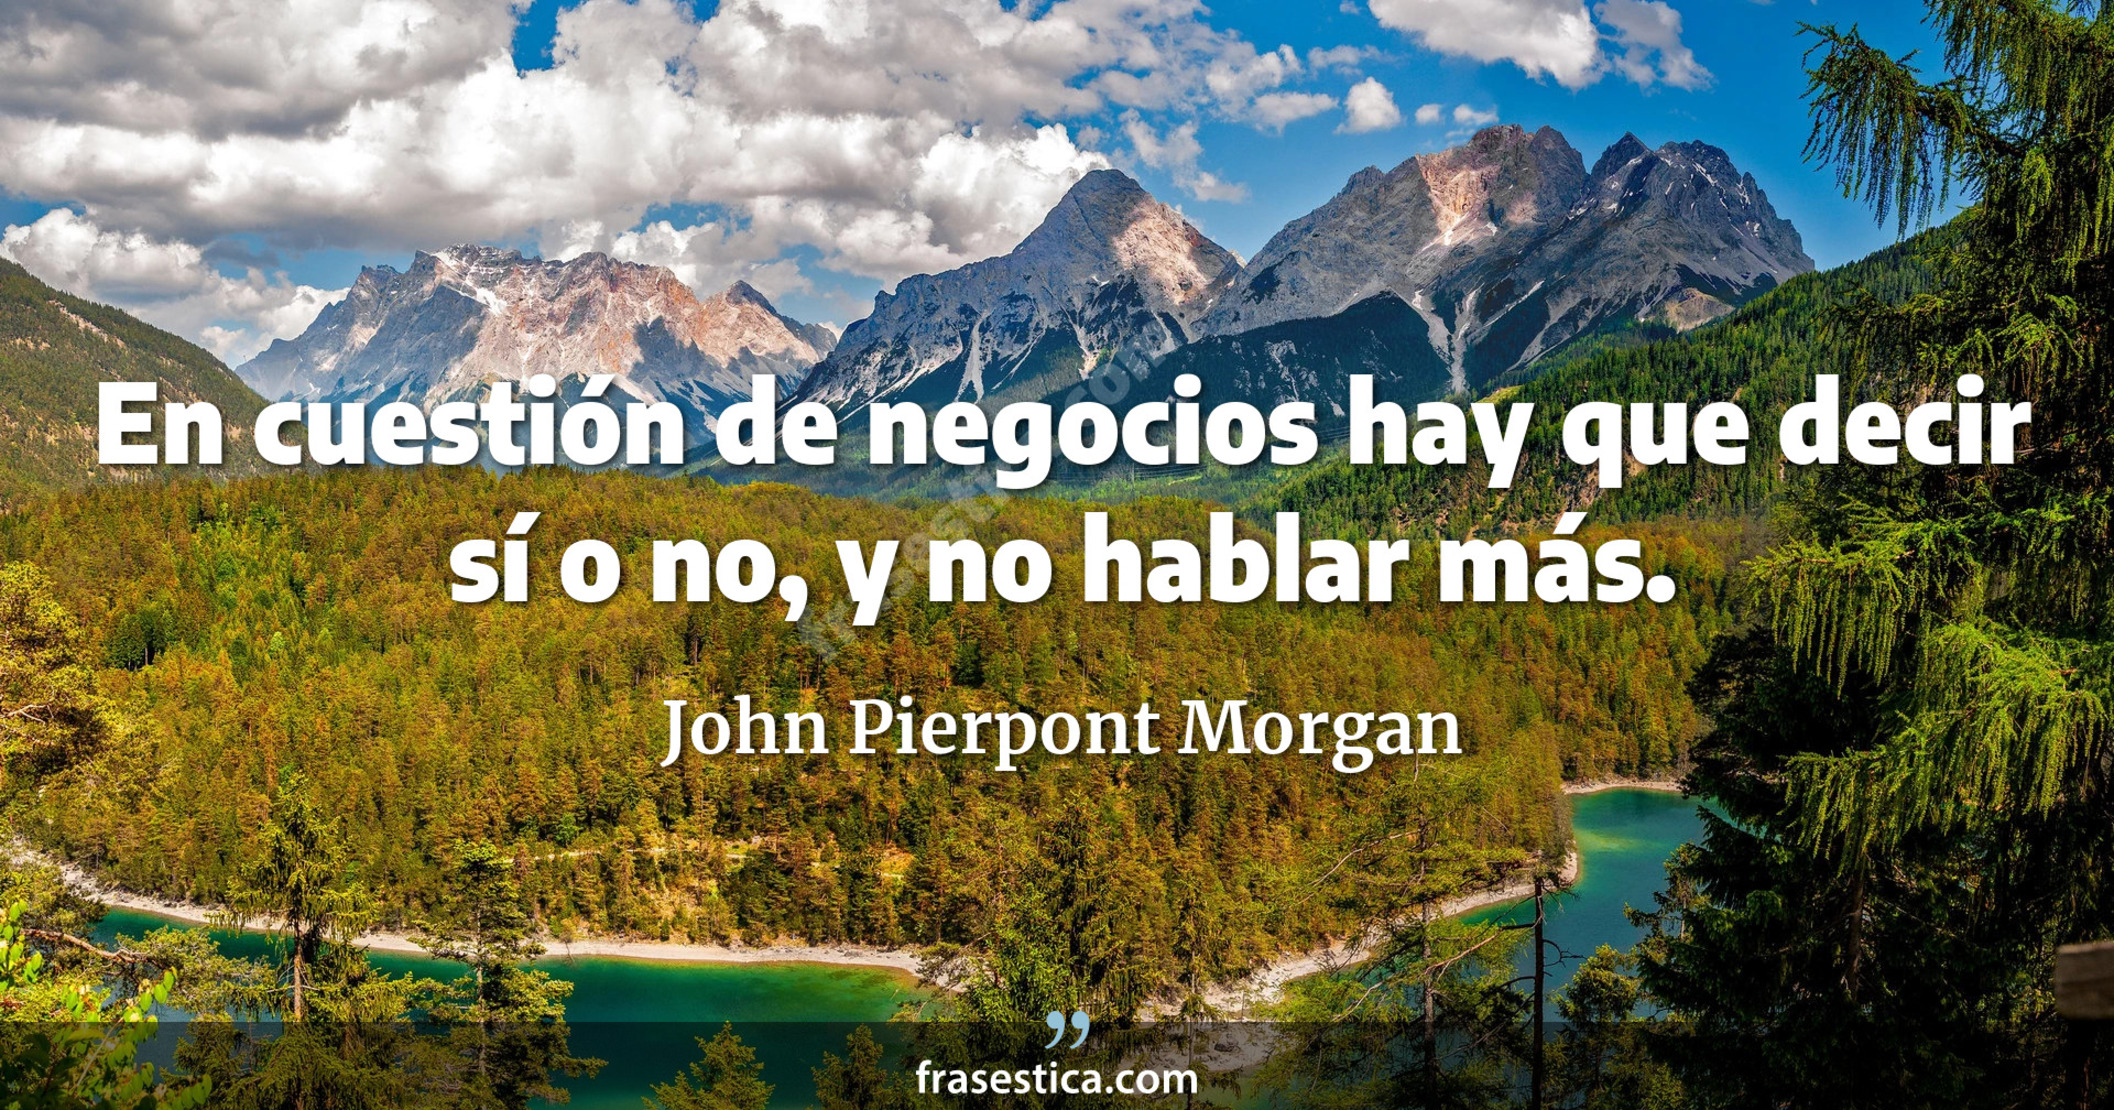 En cuestión de negocios hay que decir sí o no, y no hablar más. - John Pierpont Morgan